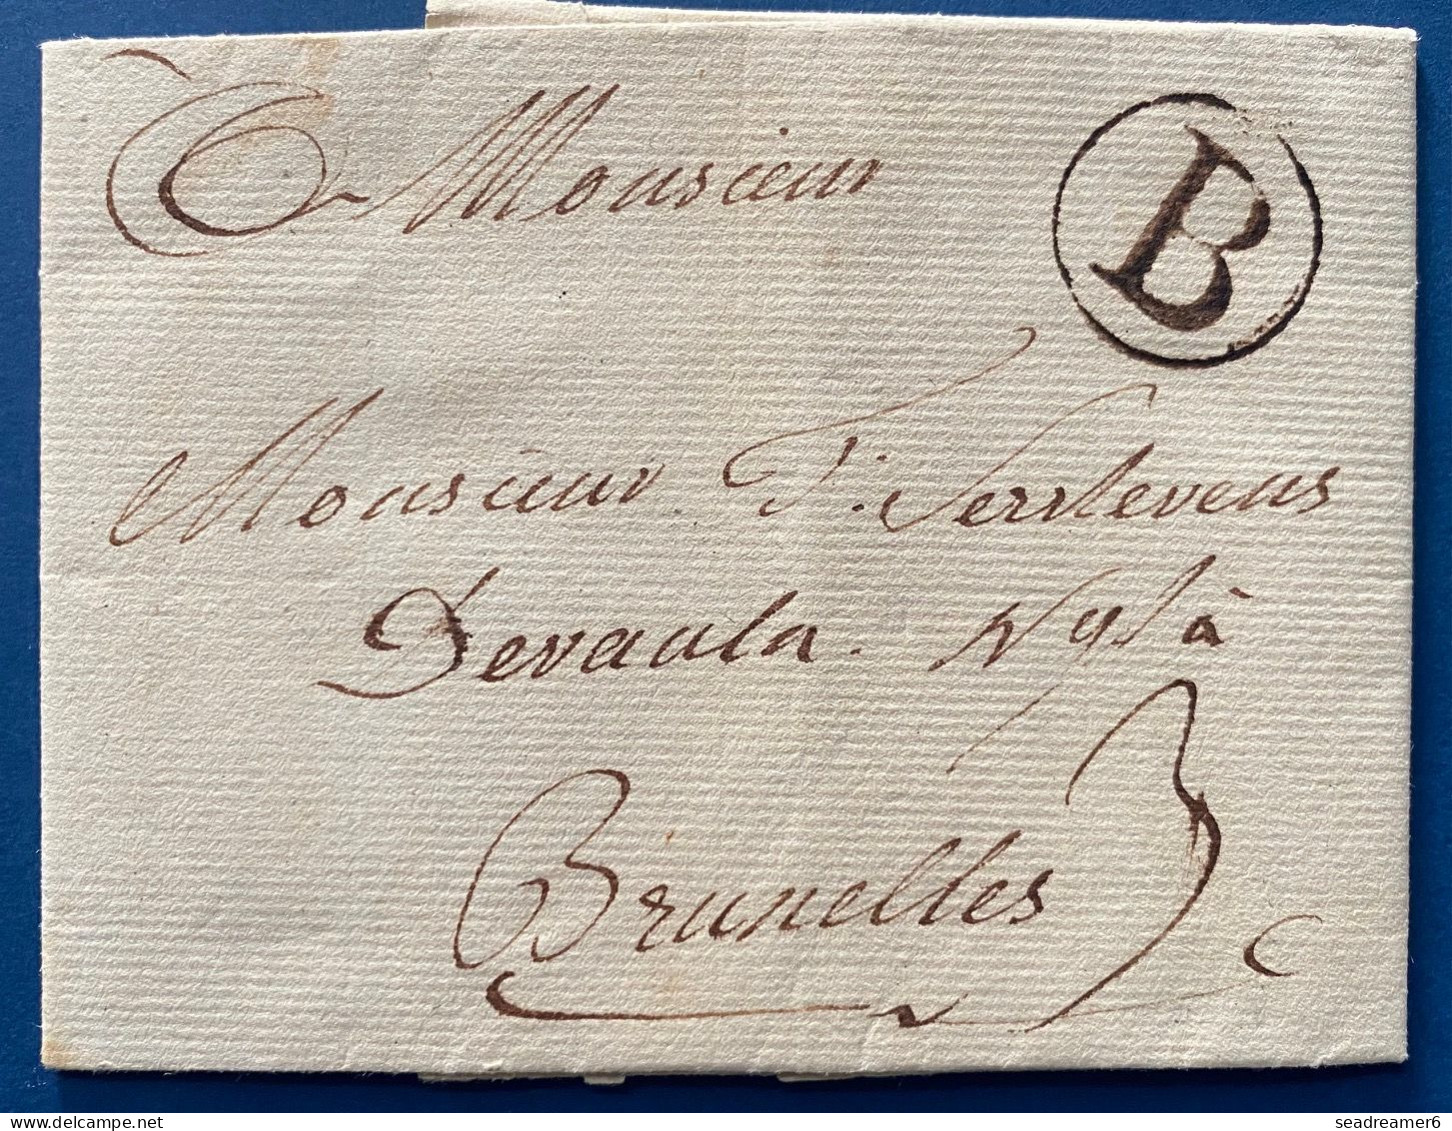 BELGIQUE Pays-Bas Autrichien Du 4 SEPT 1785 De DOHLAIN Marque De Transit B De BATTICE Pour BRUXELLES + Taxe 3c SUP - 1714-1794 (Austrian Netherlands)